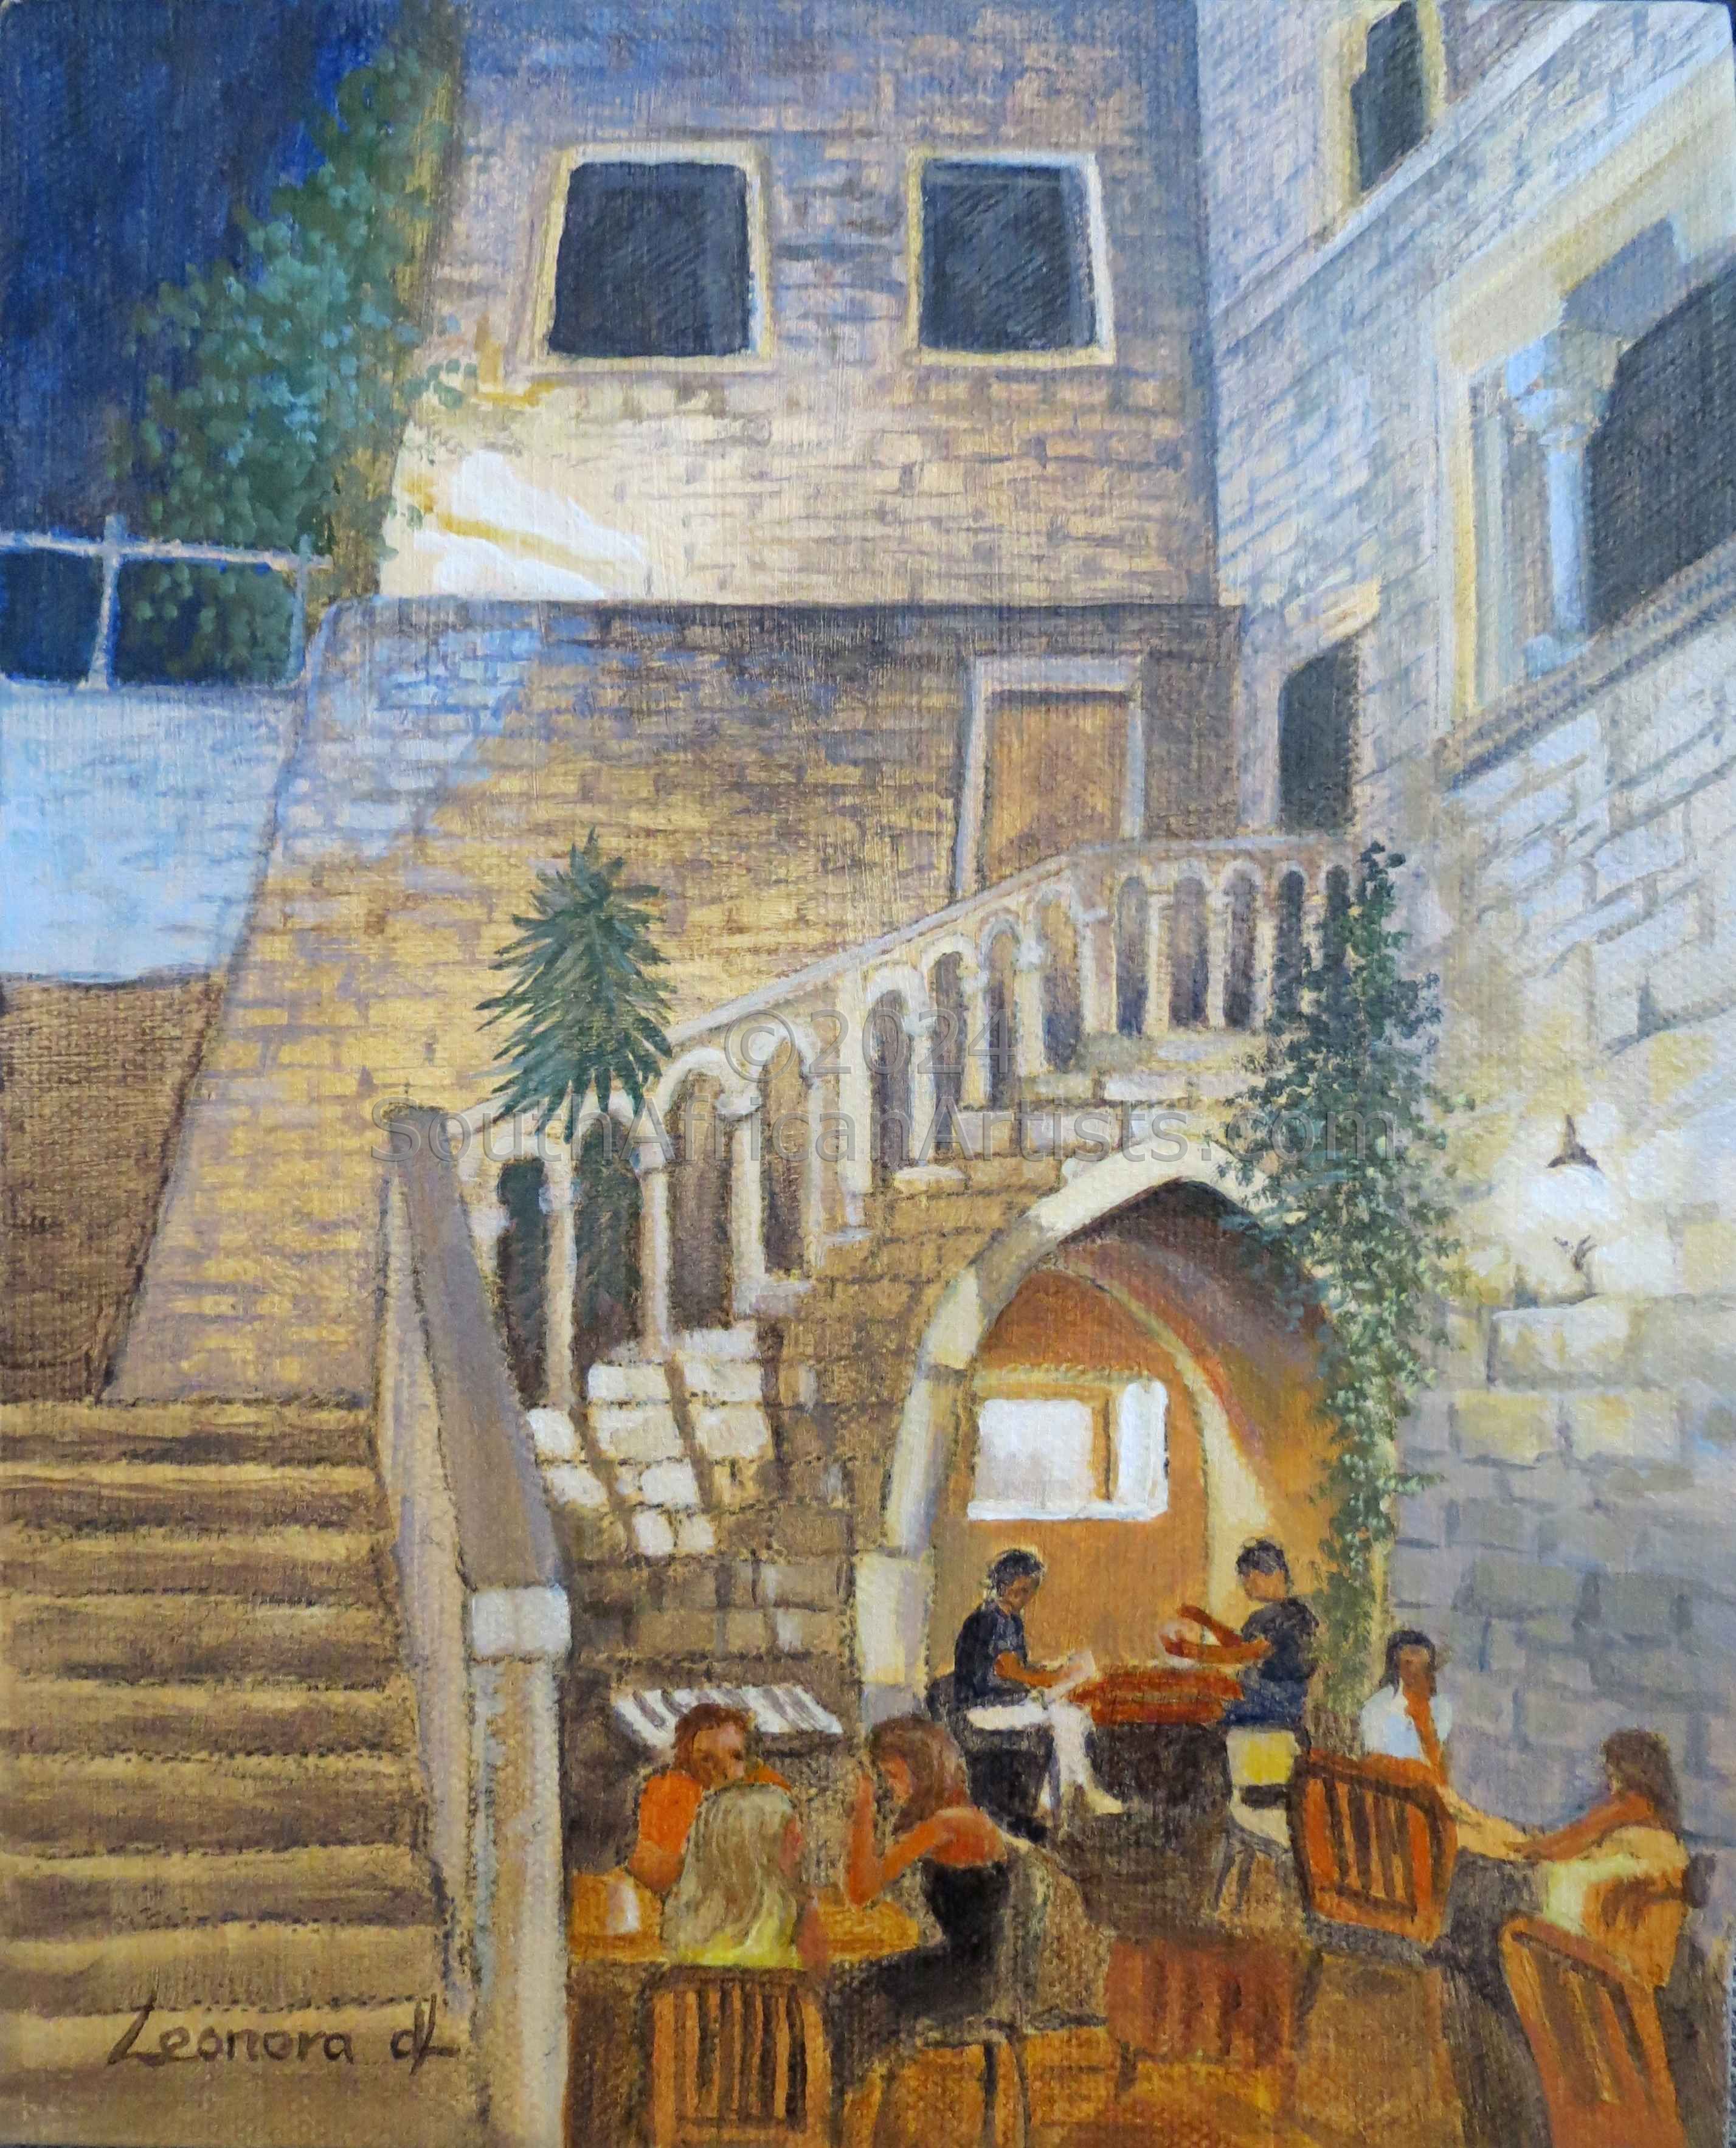 Supper in Split - Croatia